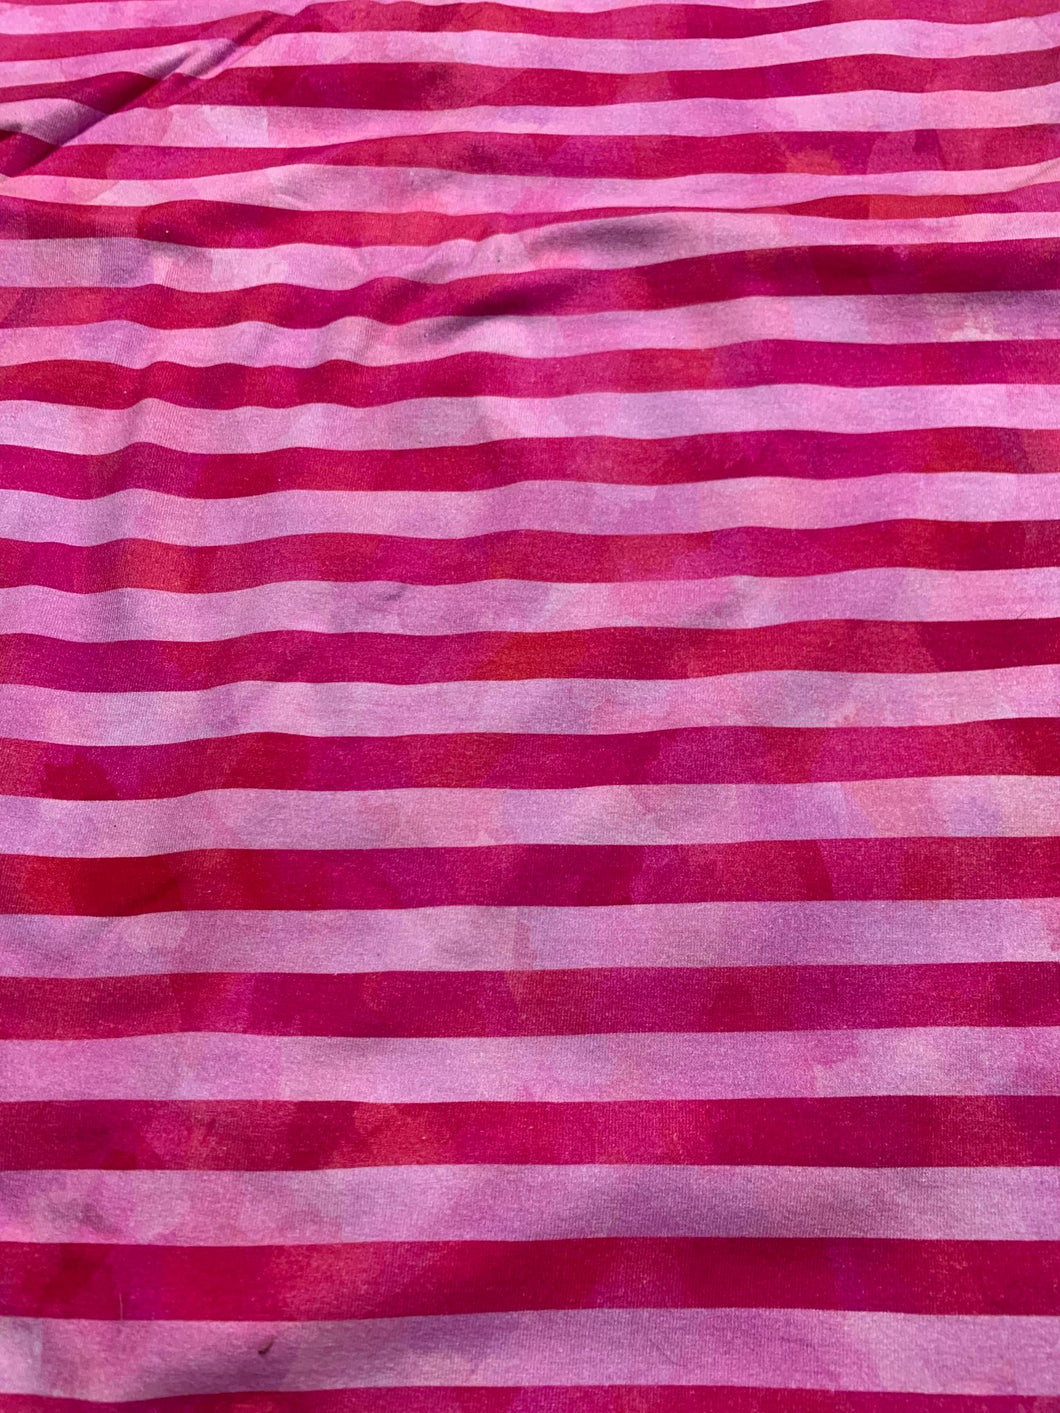 DESTASH Grunge Stripes Pink Cotton Lycra